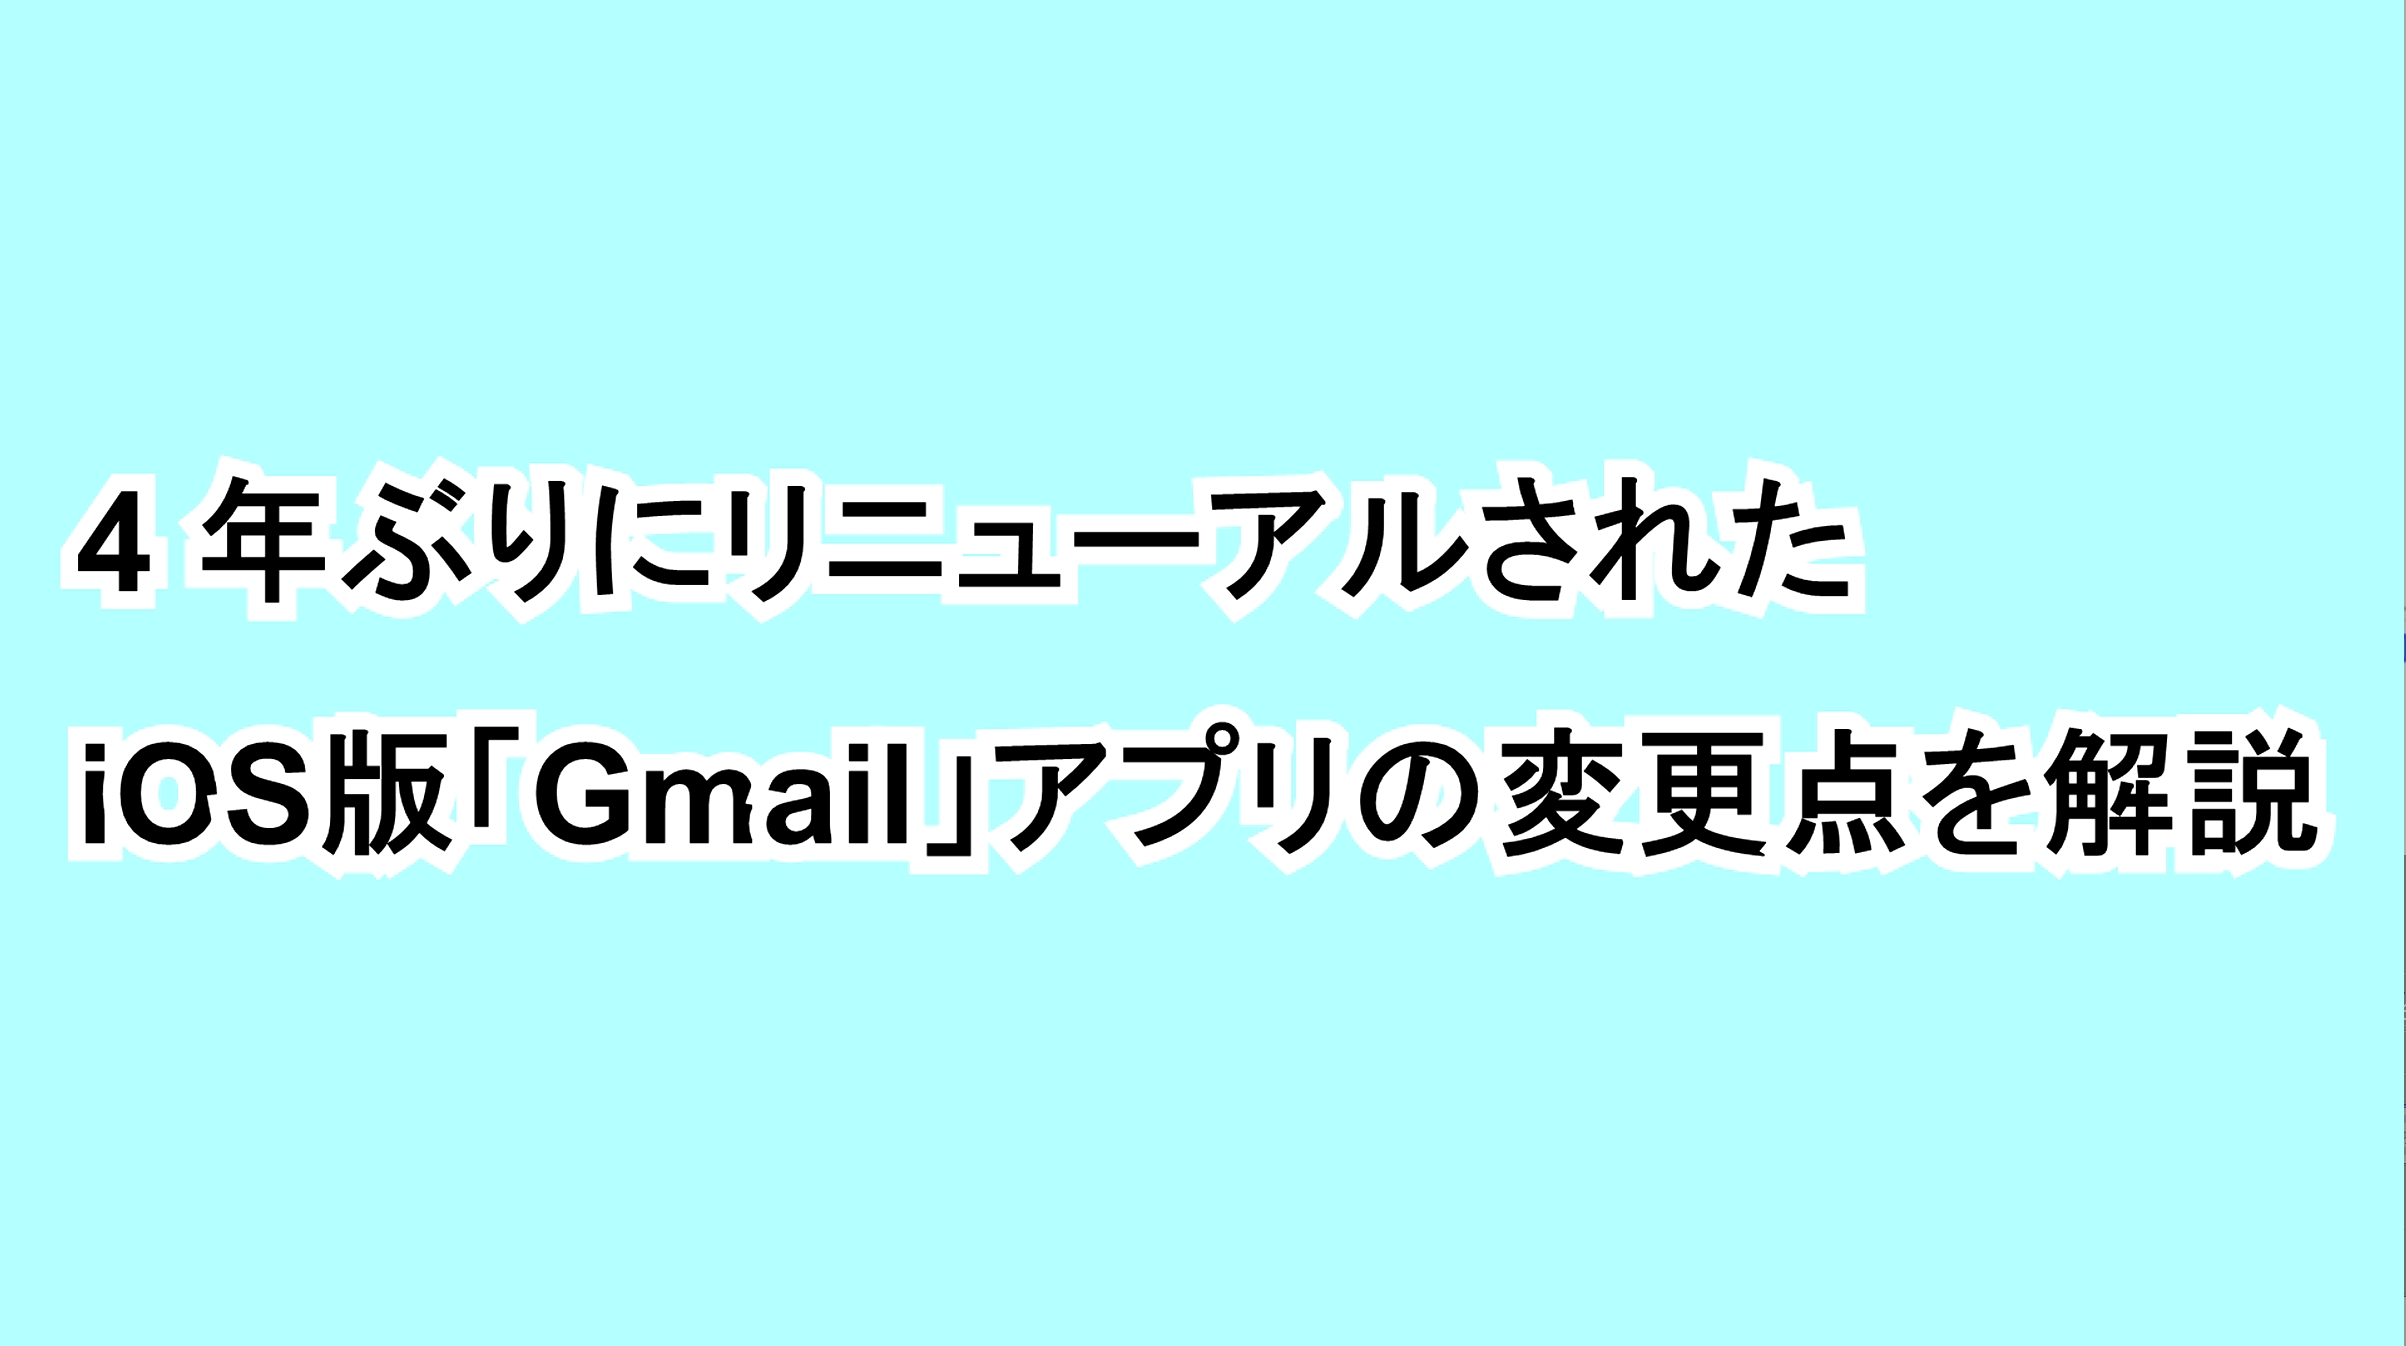 4年ぶりにリニューアルされたiOS版「Gmail」アプリの変更点を解説